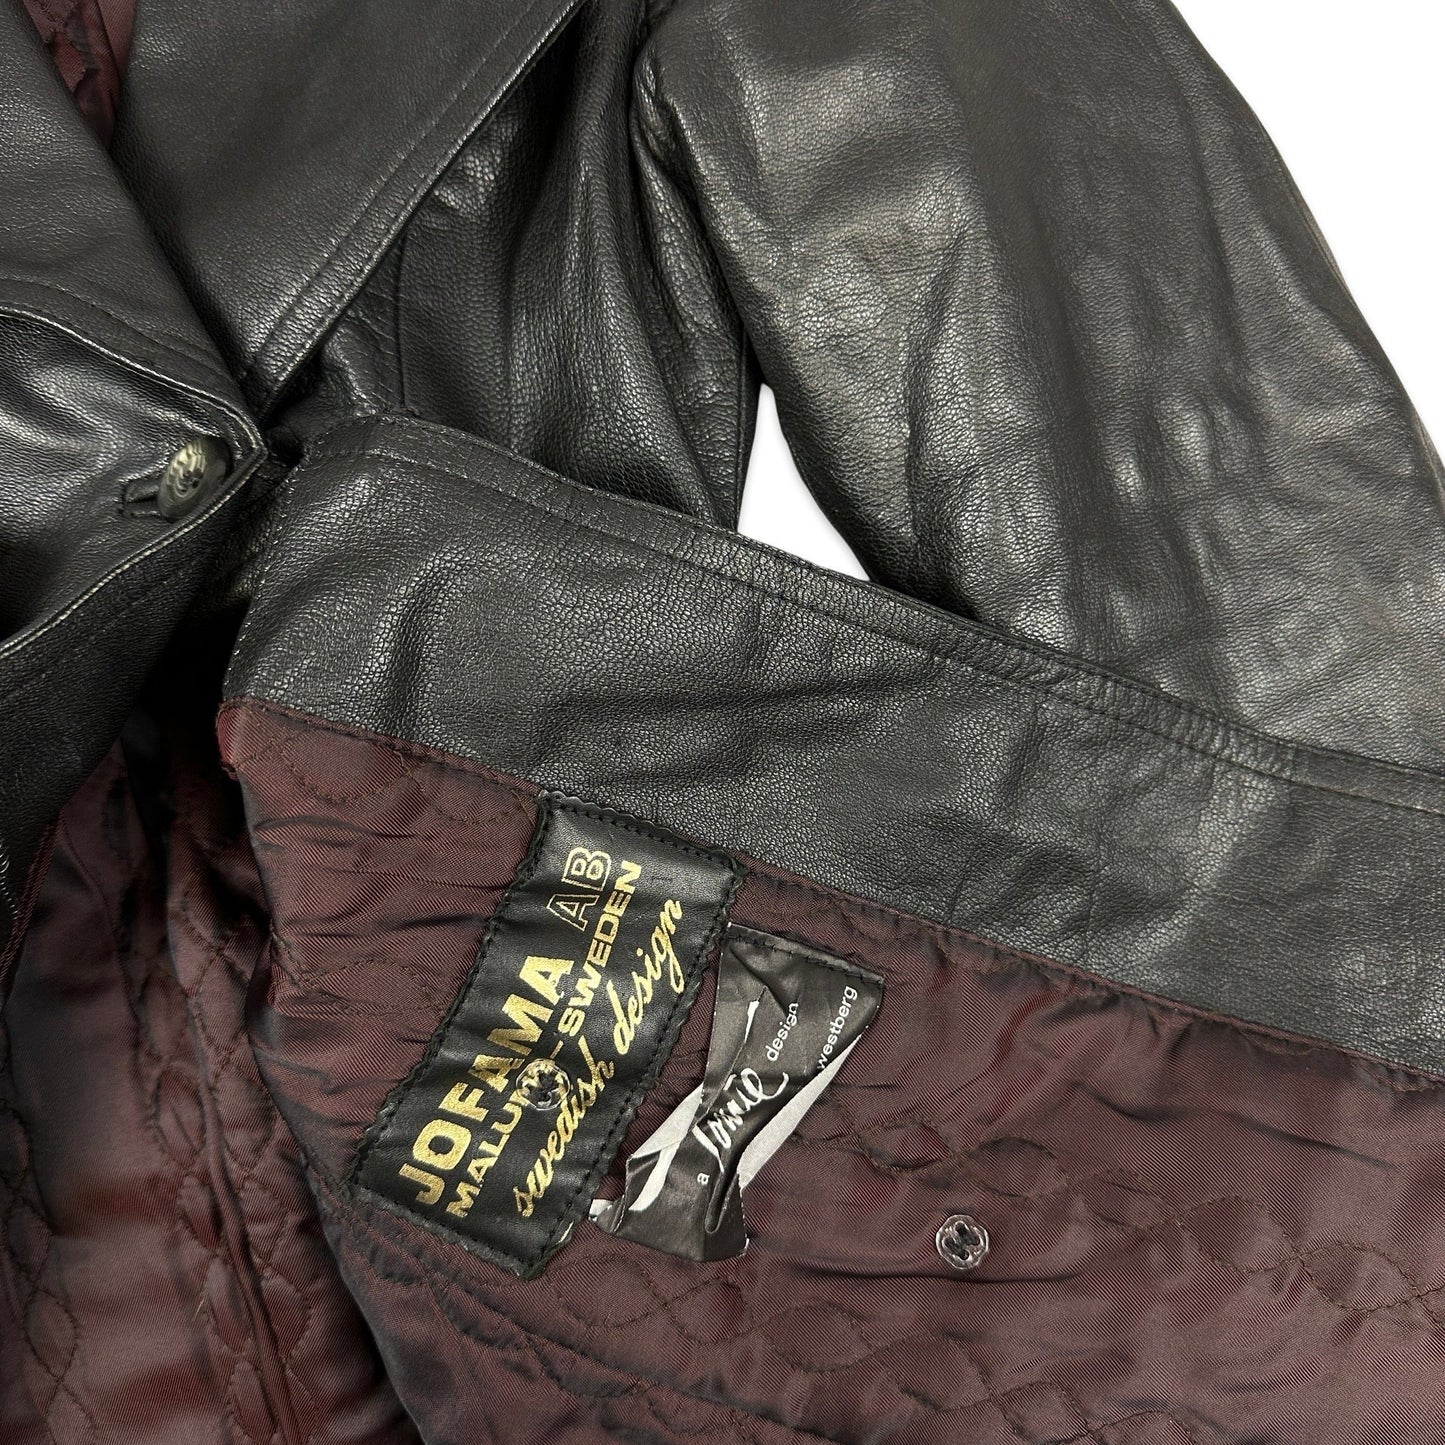 90s Vintage Ladies Black Leather Trench Coat 8